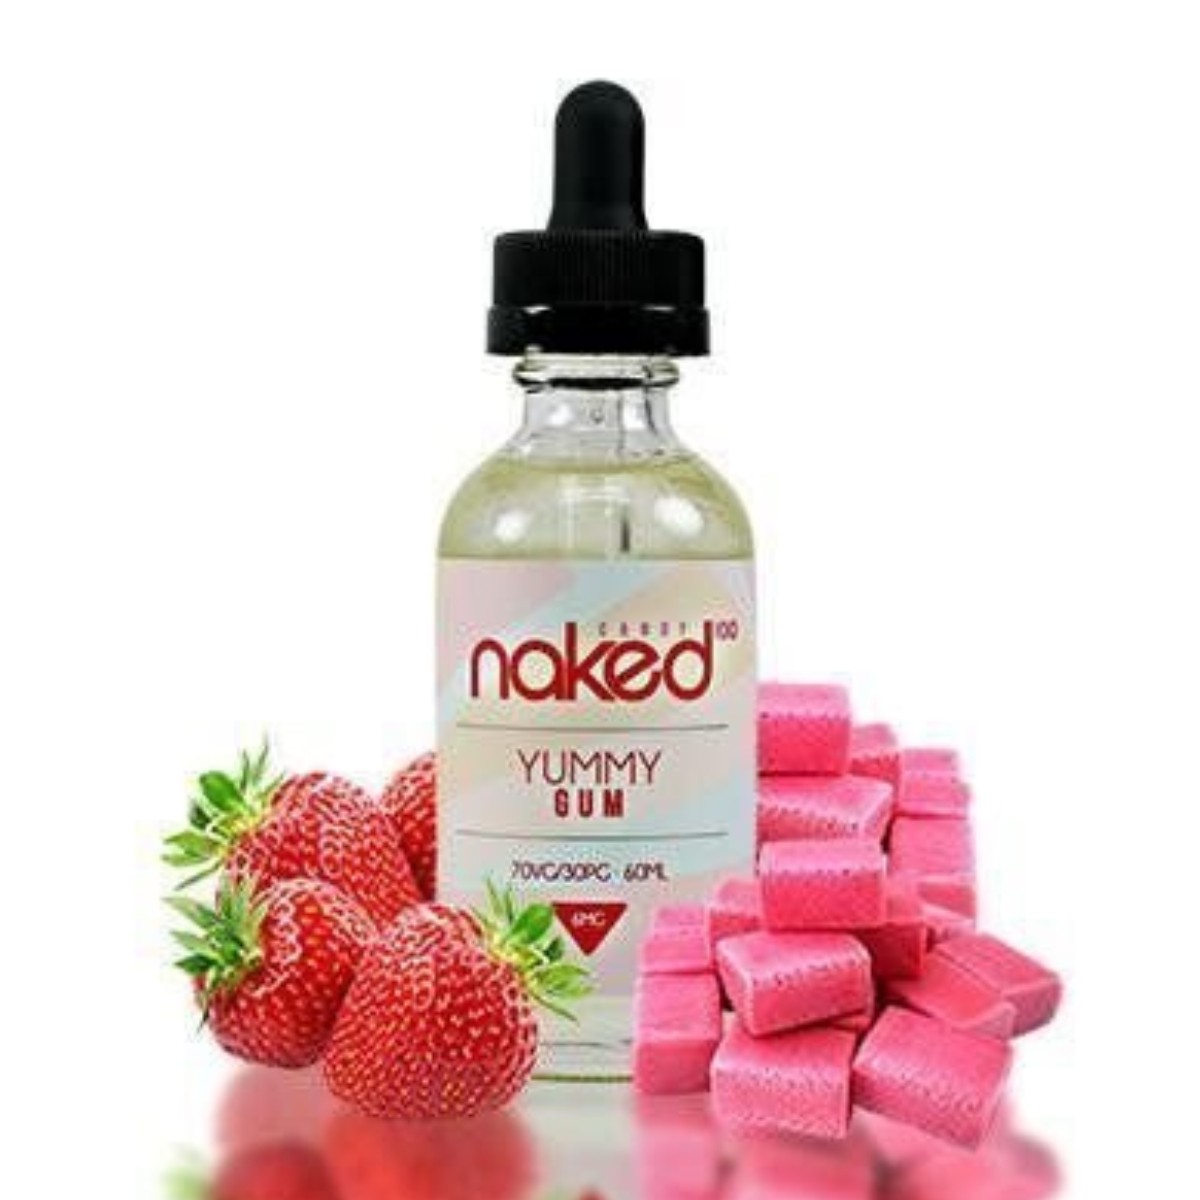 Naked 100 Yummy Gum 60ml | vaping.com